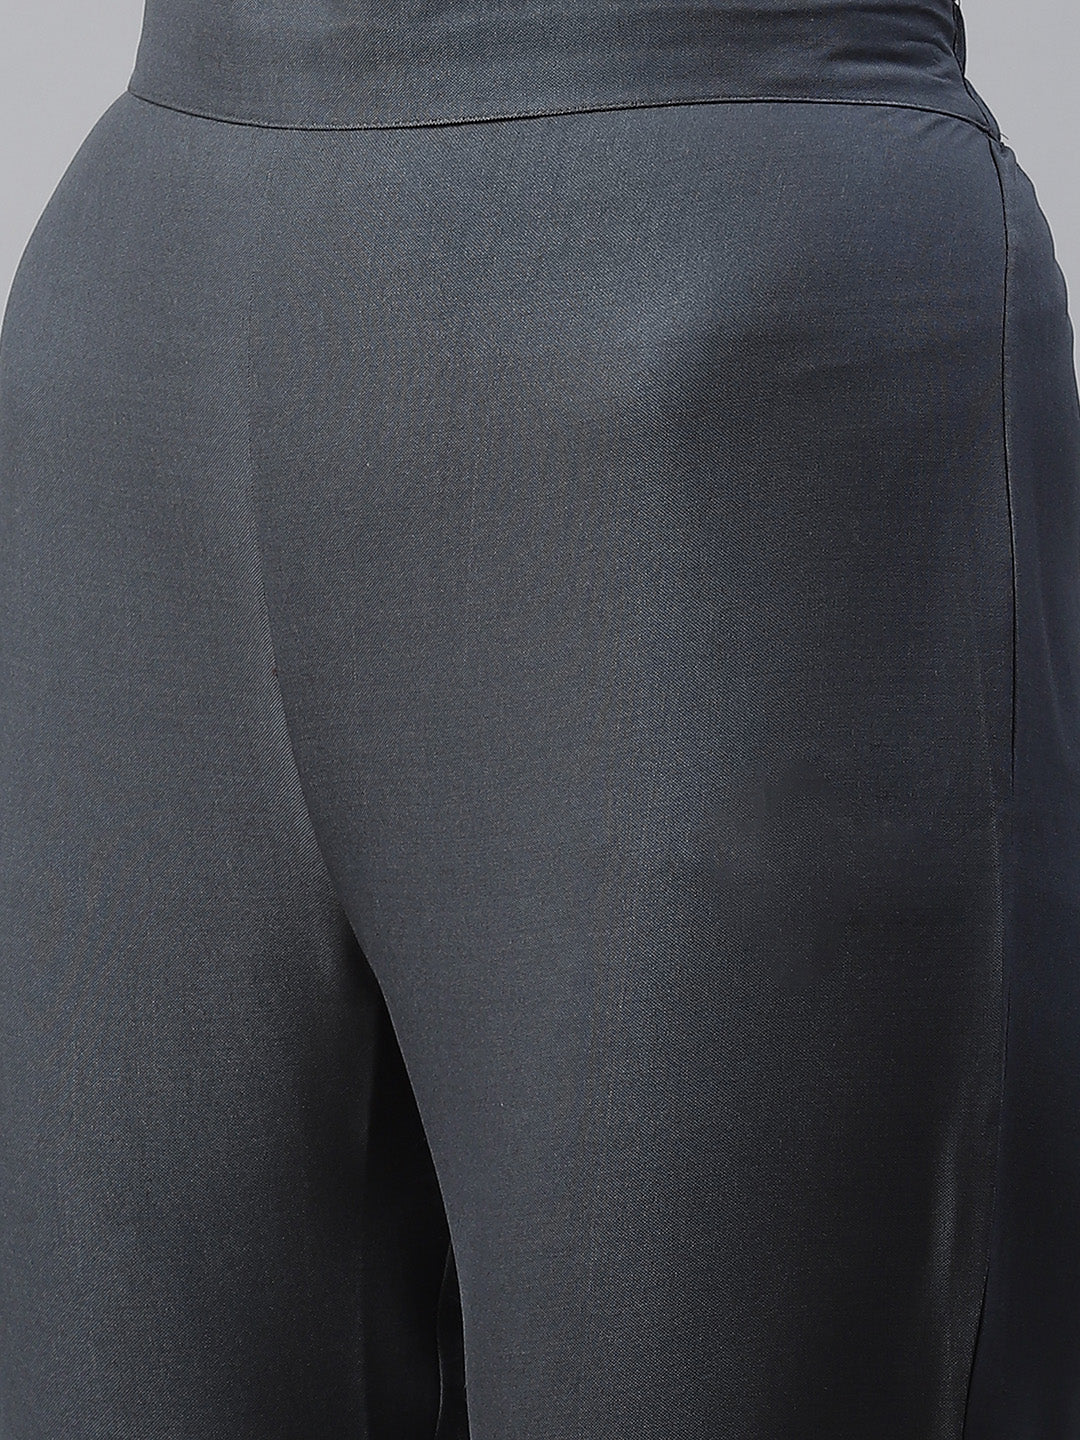 Women Grey Rayon Kurta With Pant by Ziyaa (2pcs Set)